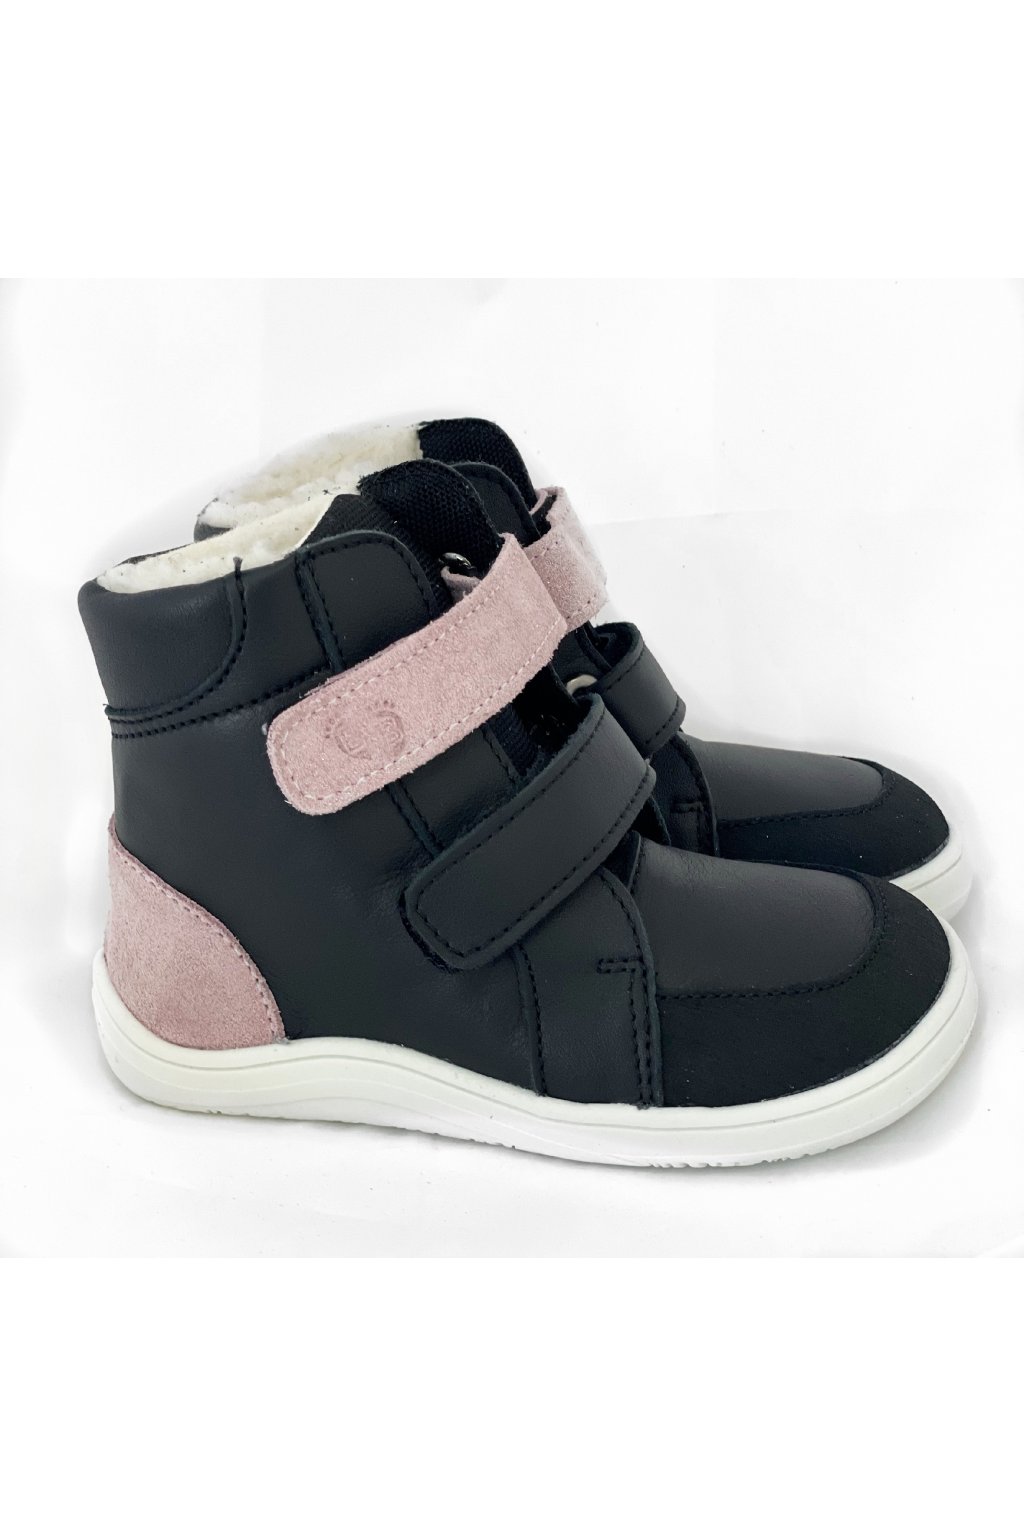 Baby Bare Shoes Febo Winter Sparkle Black - okop Asfaltico Velikost obuvi: 21